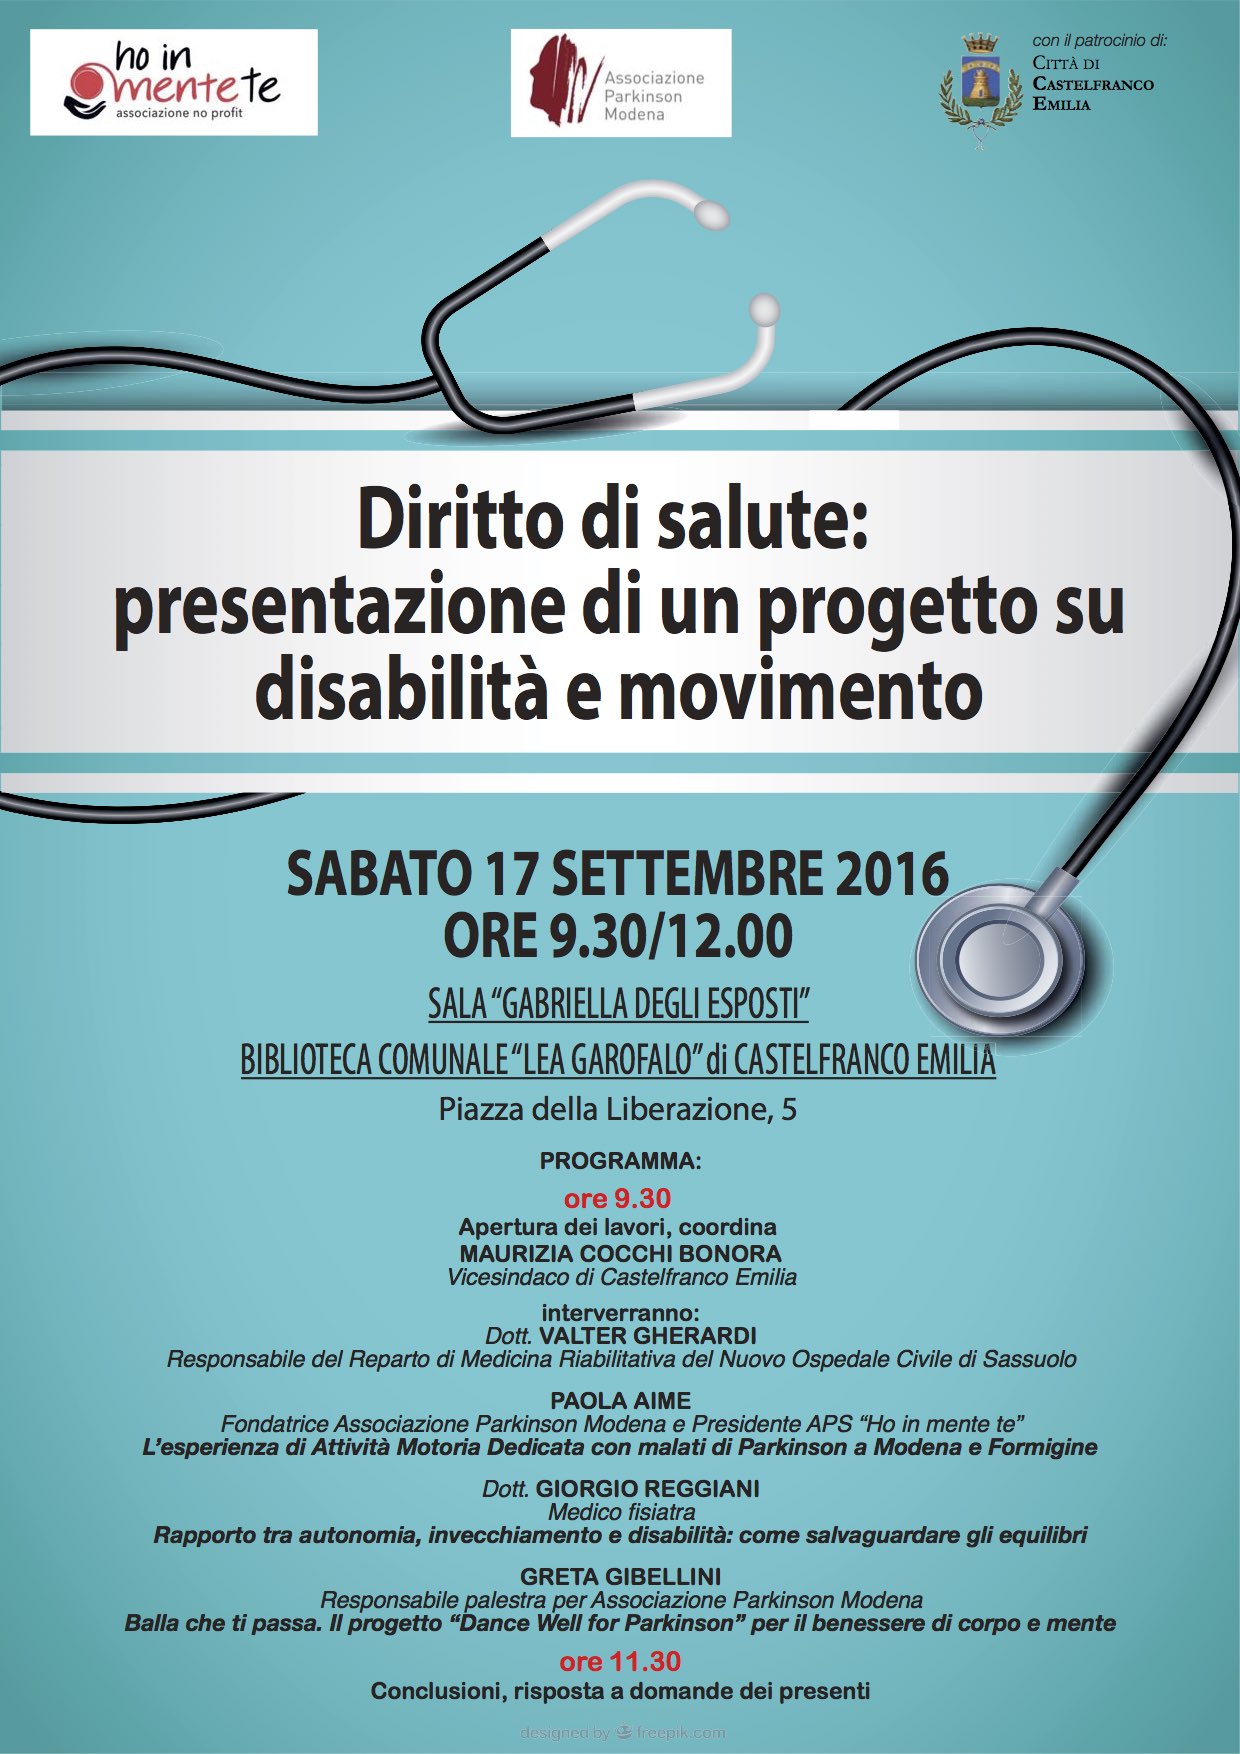 Diritto di salute: presentazione progetto su disabilità e movimento 